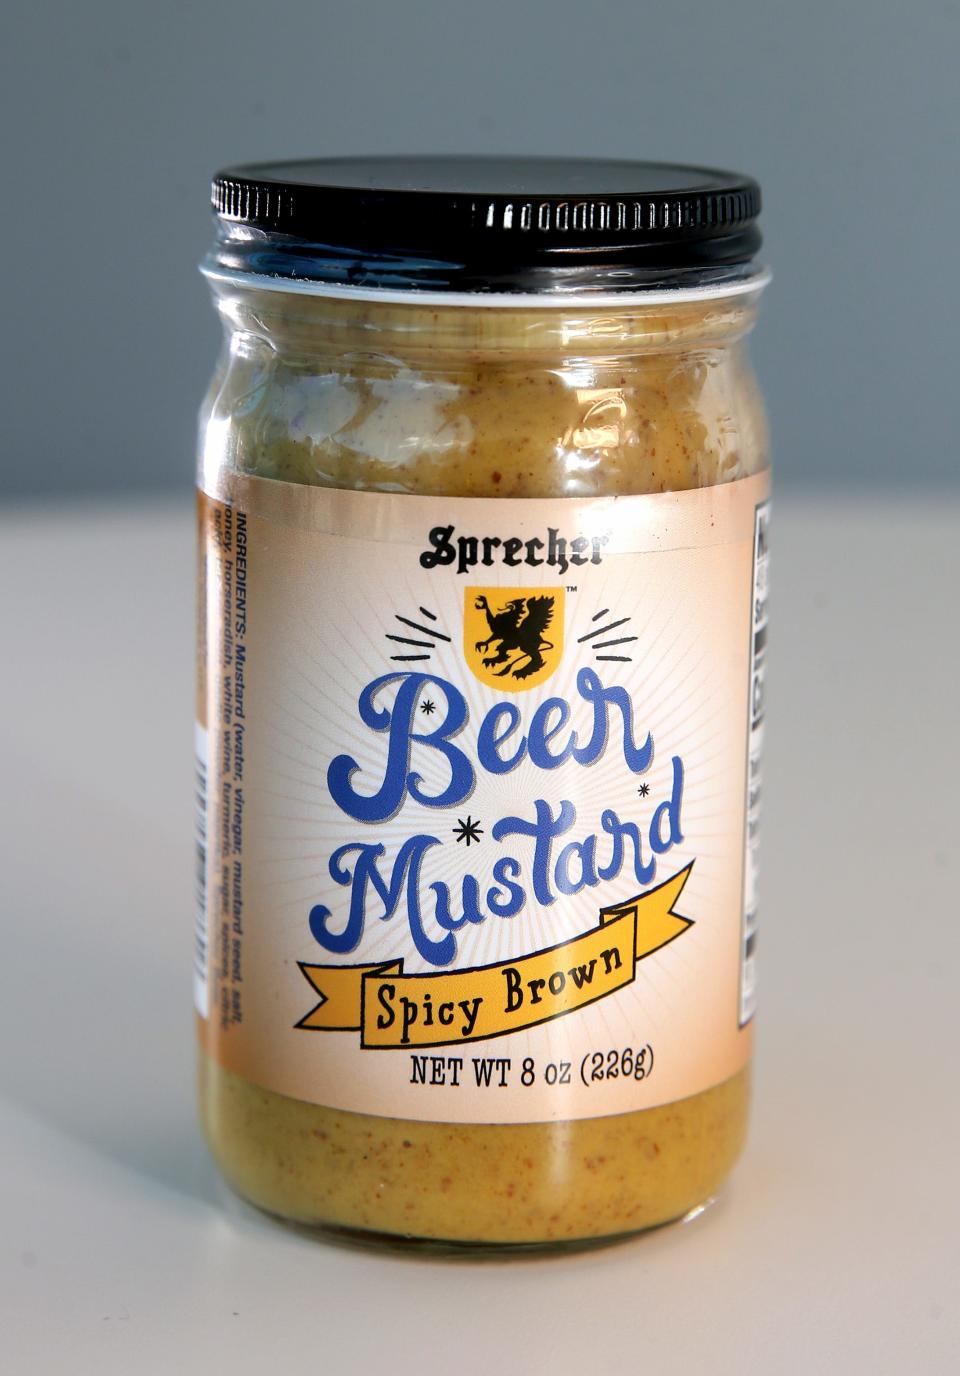 Sprecher beer mustard